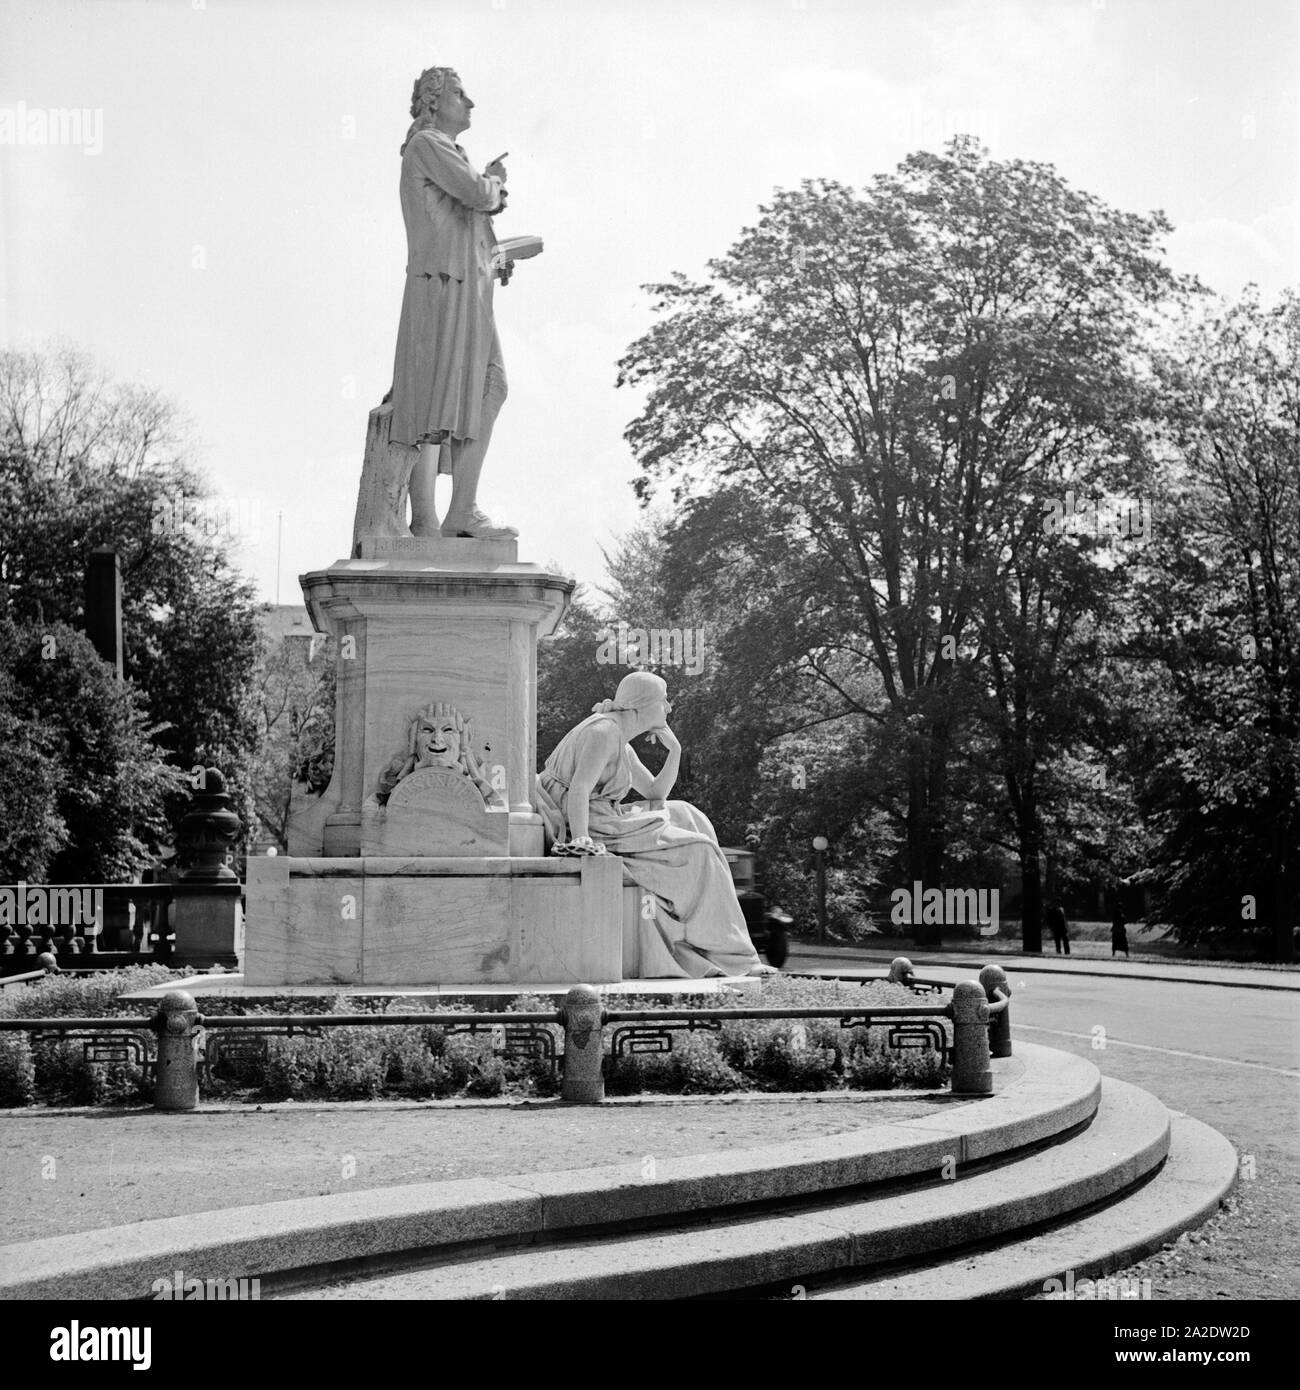 Das Schillerdenkmal in Wiesbaden, Deutschland 1930er Jahre. Monument for German poet Friedrich Schiller at Wiesbaden, Germany 1930s. Stock Photo